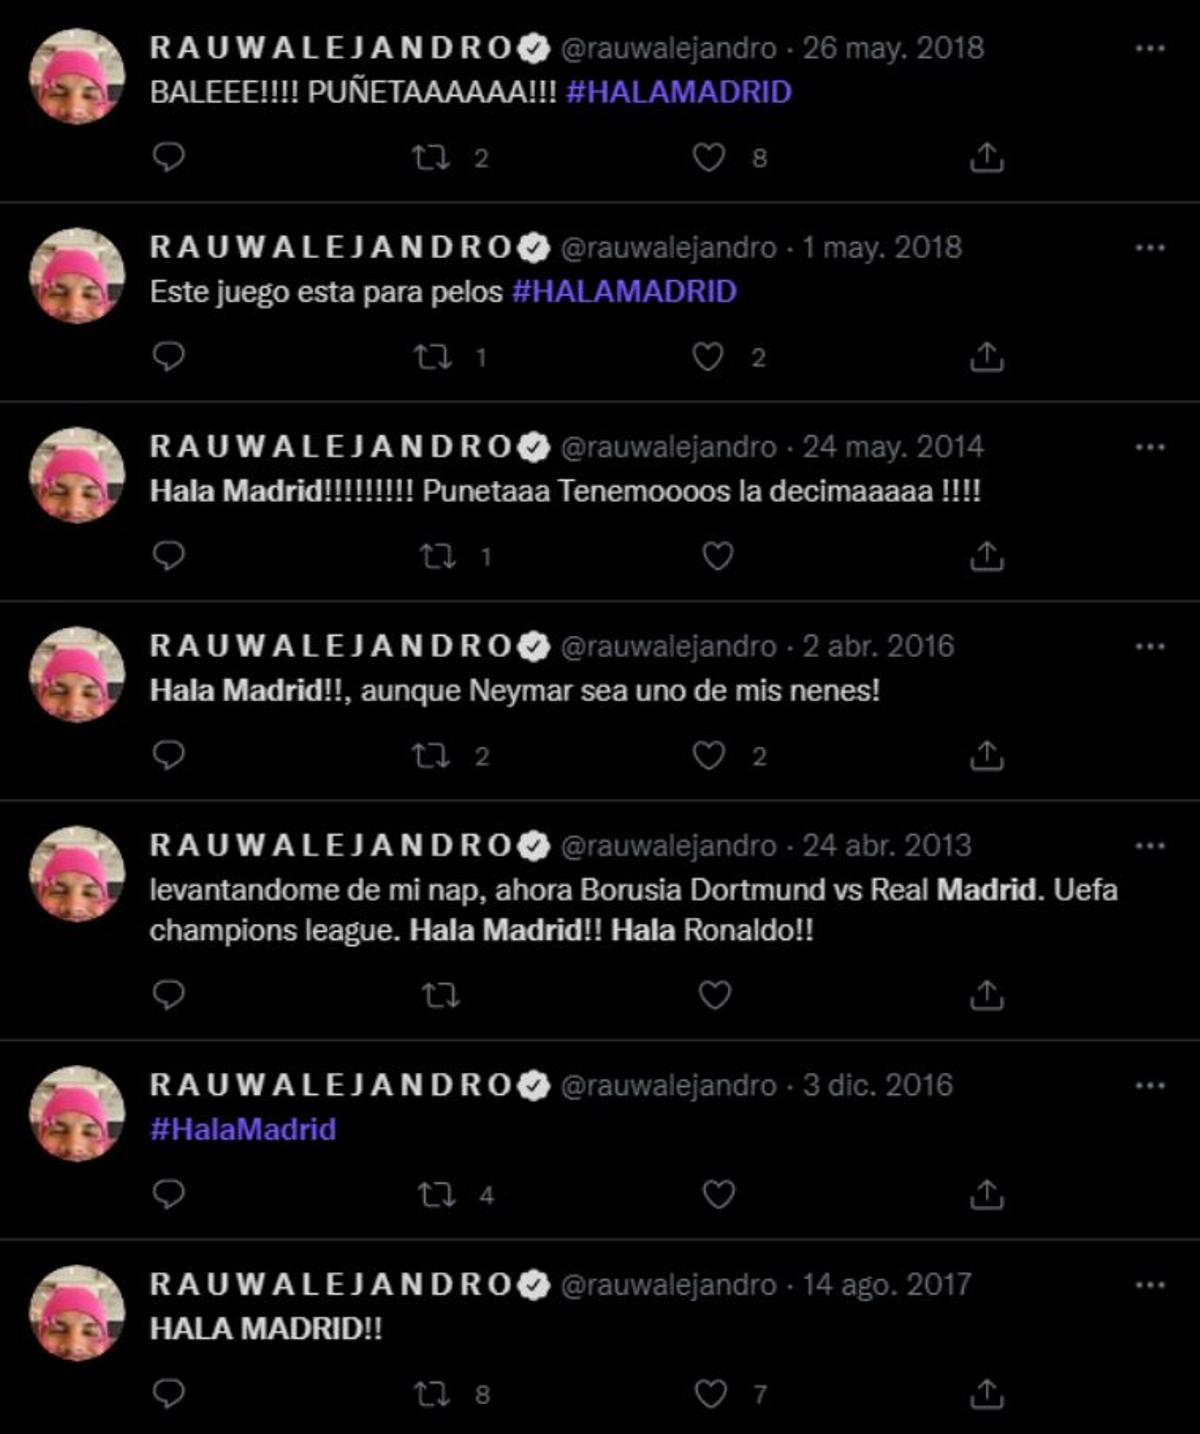 Los tweets de Rauw Alejandro como madridista